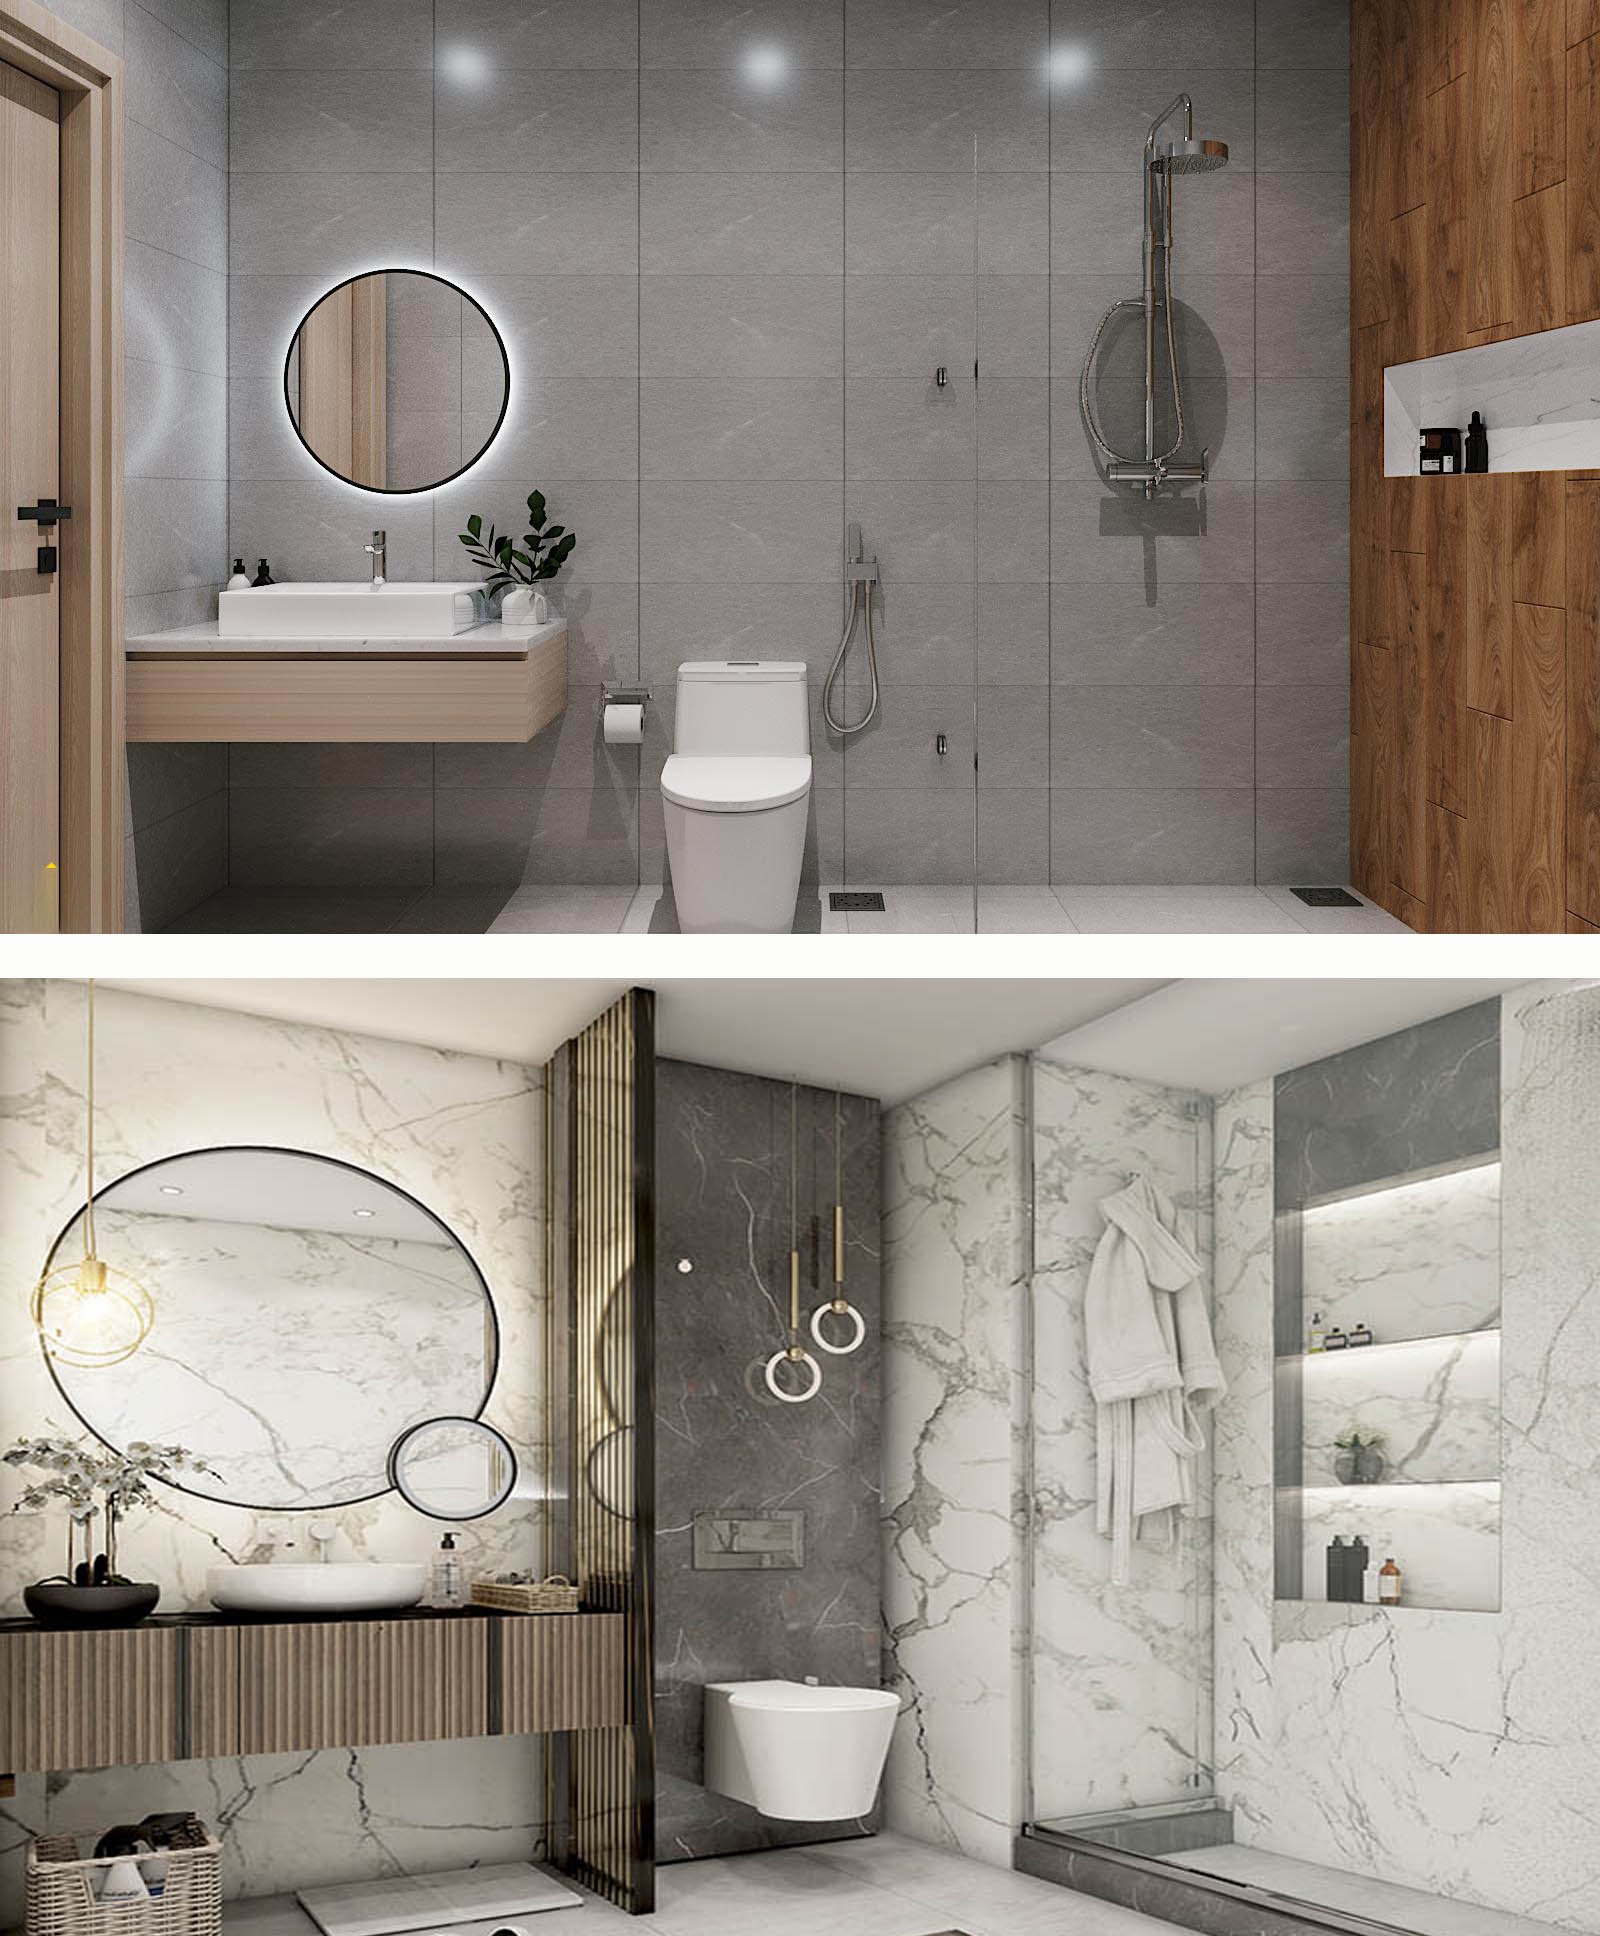 Bạn có thể thêm gương hoặc một số loại bồn tắm kiểu mới, phù hợp với không gian và phong cách nhà tắm.